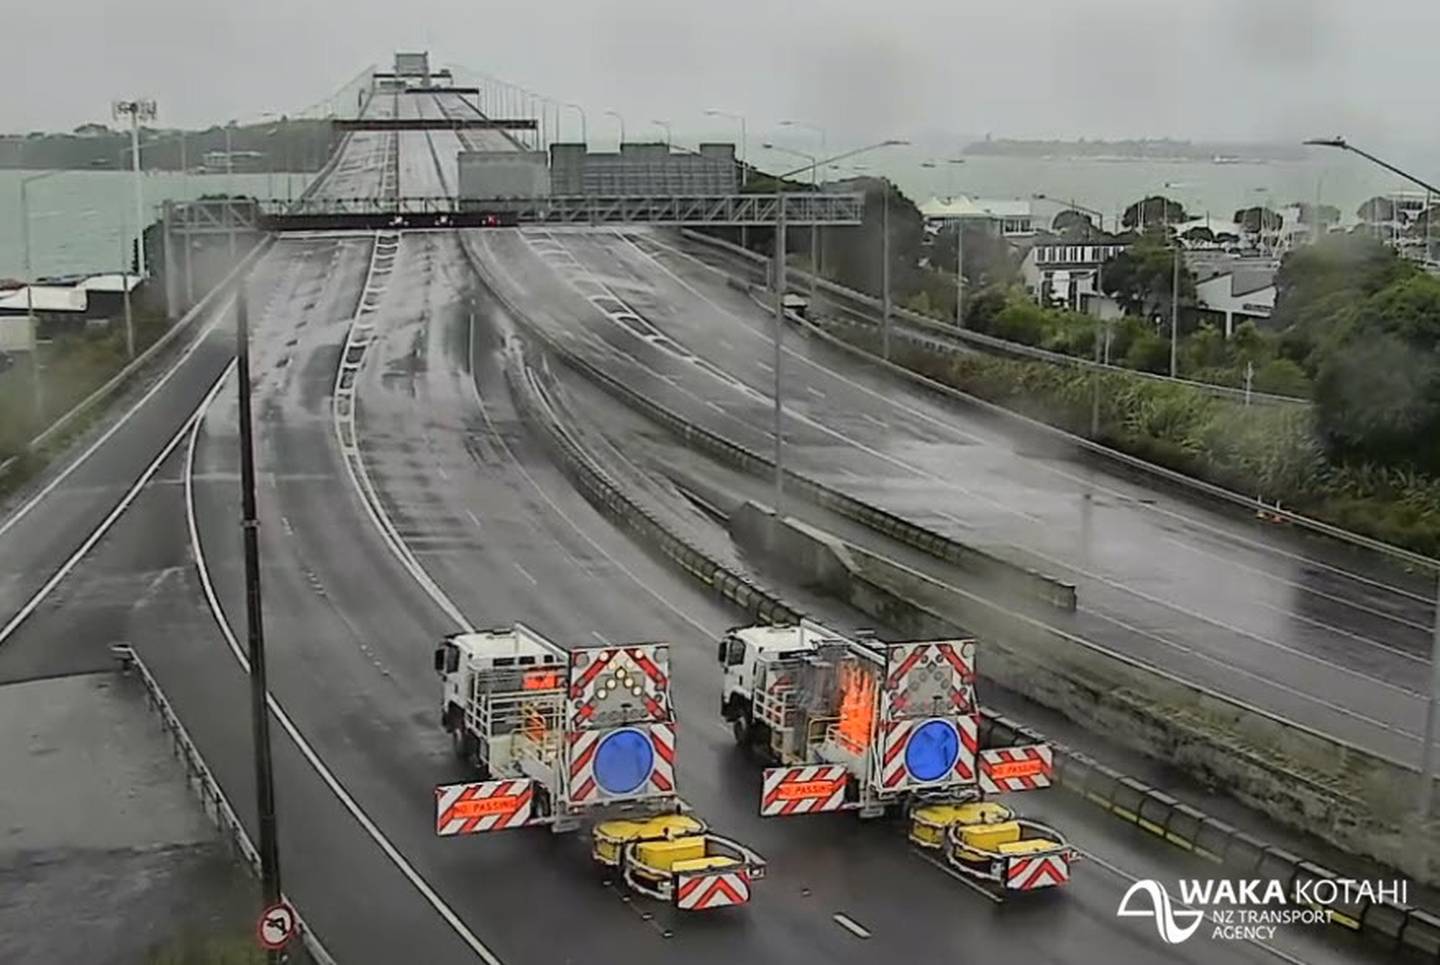 对大风的担忧迫使奥克兰海港大桥今天暂时关闭。 图片/新西兰交通局